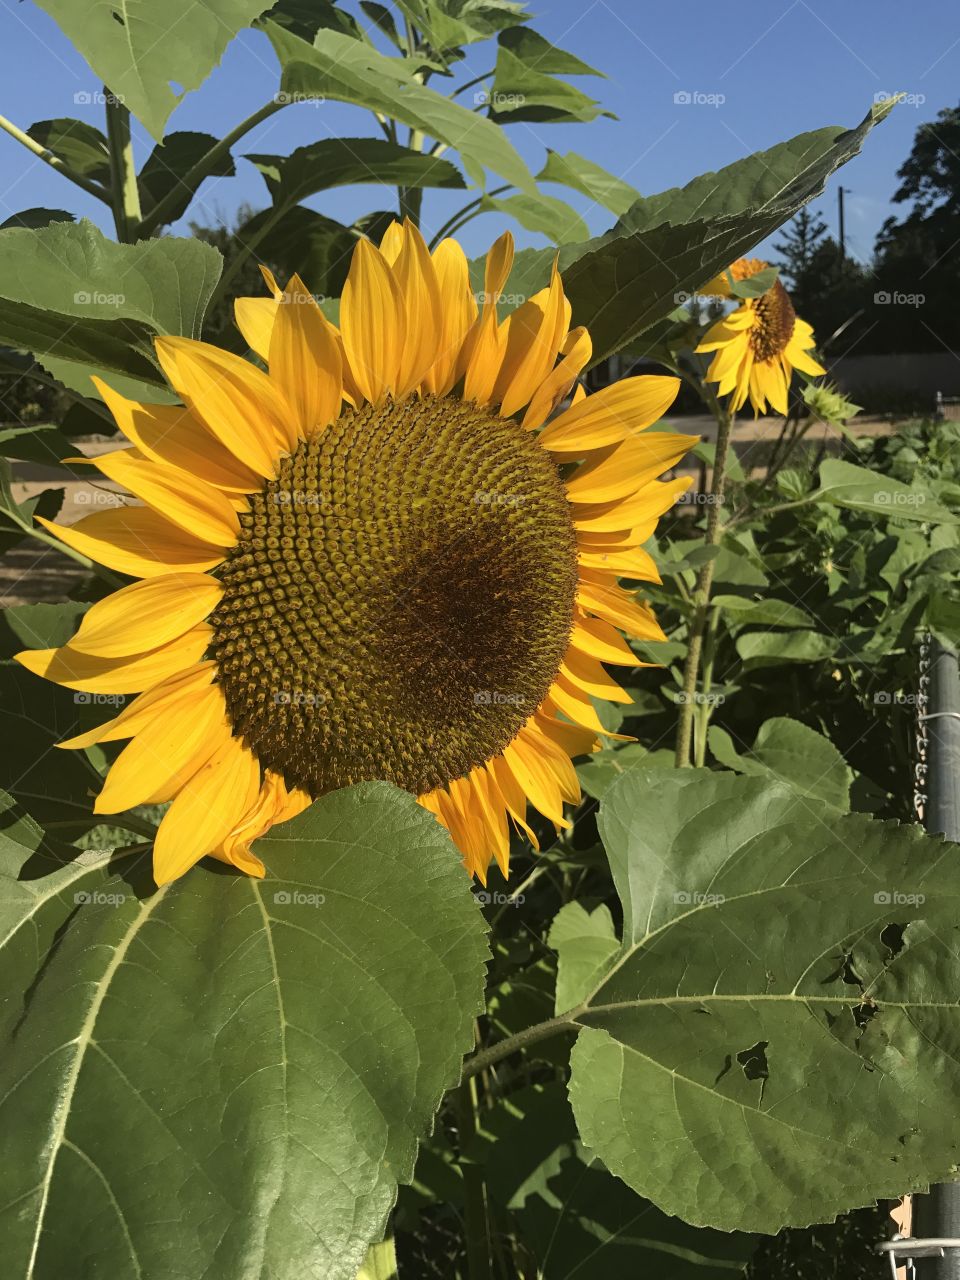 Garden Sunflower. 
